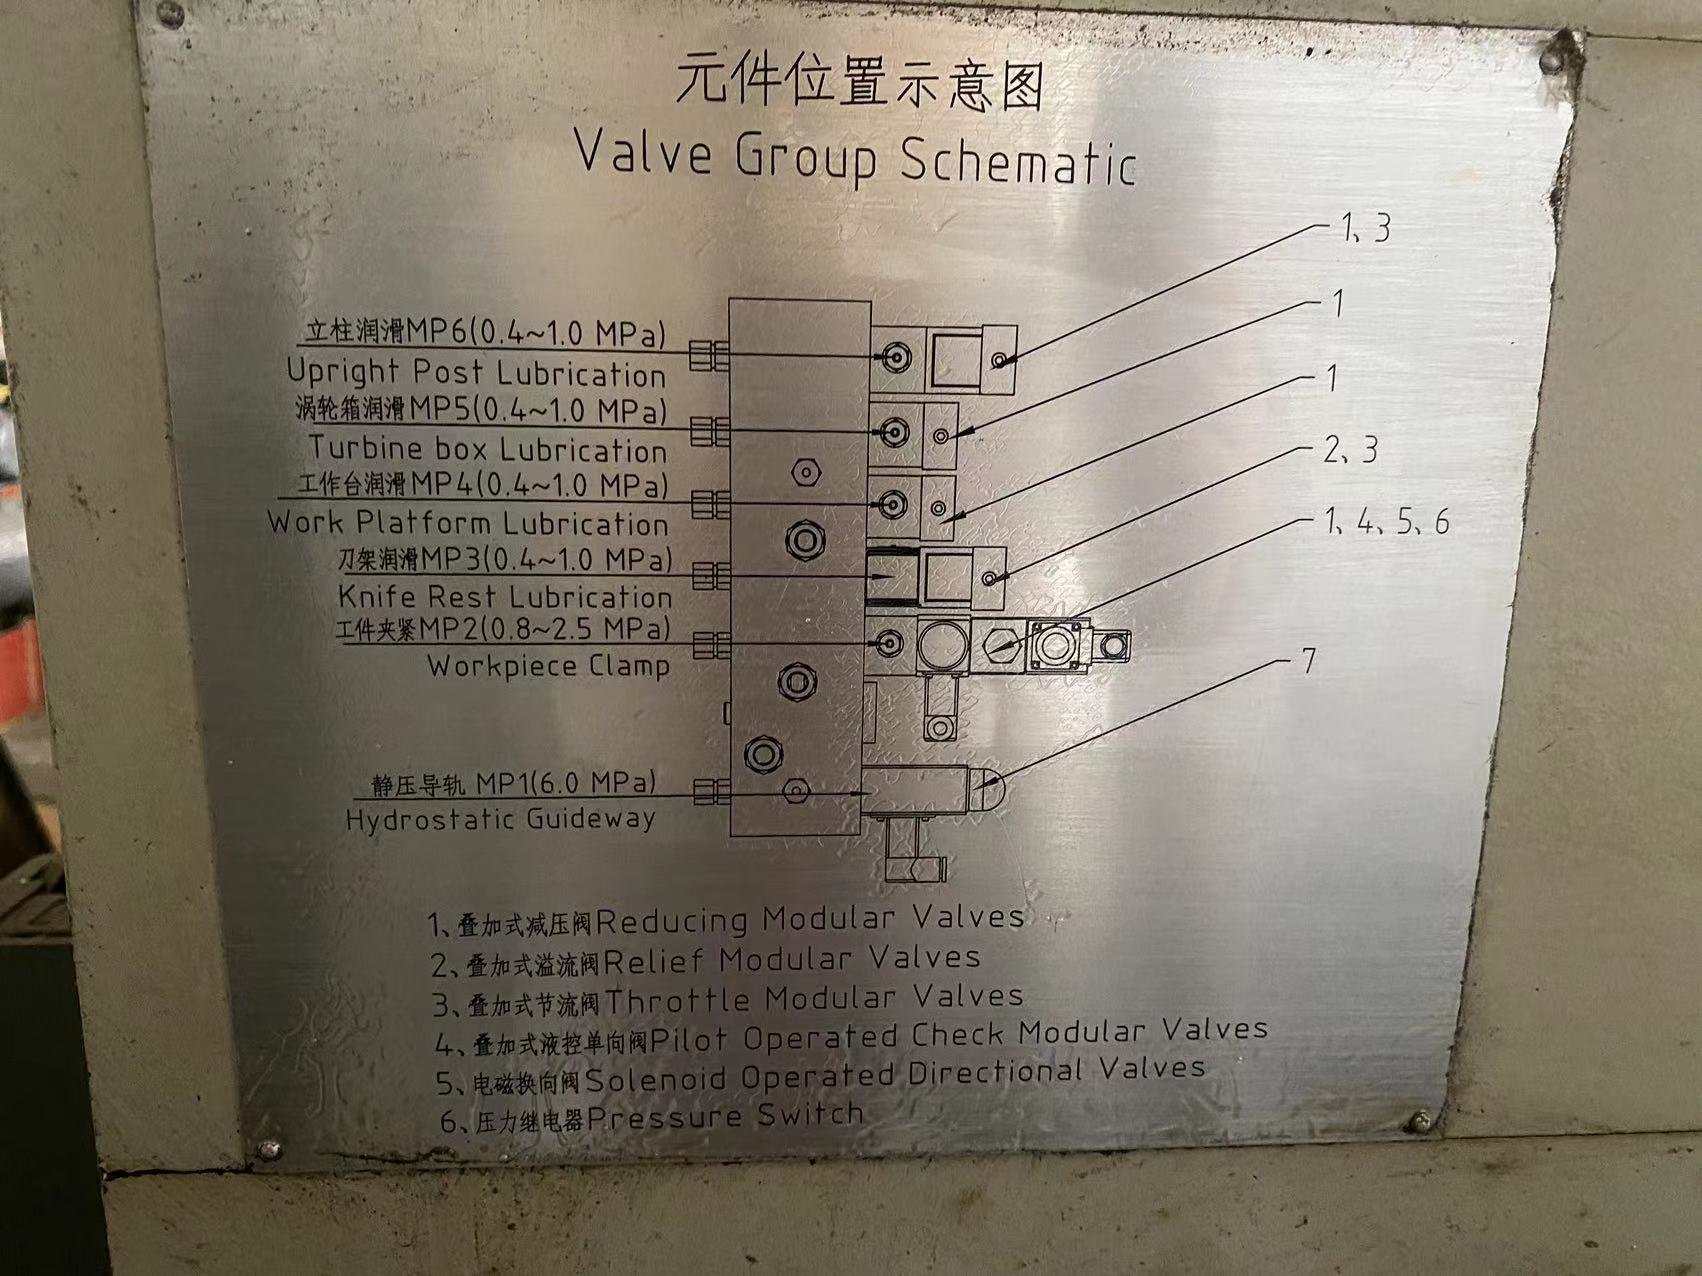 出售2020年南京二机YS5150CNC数控插齿机